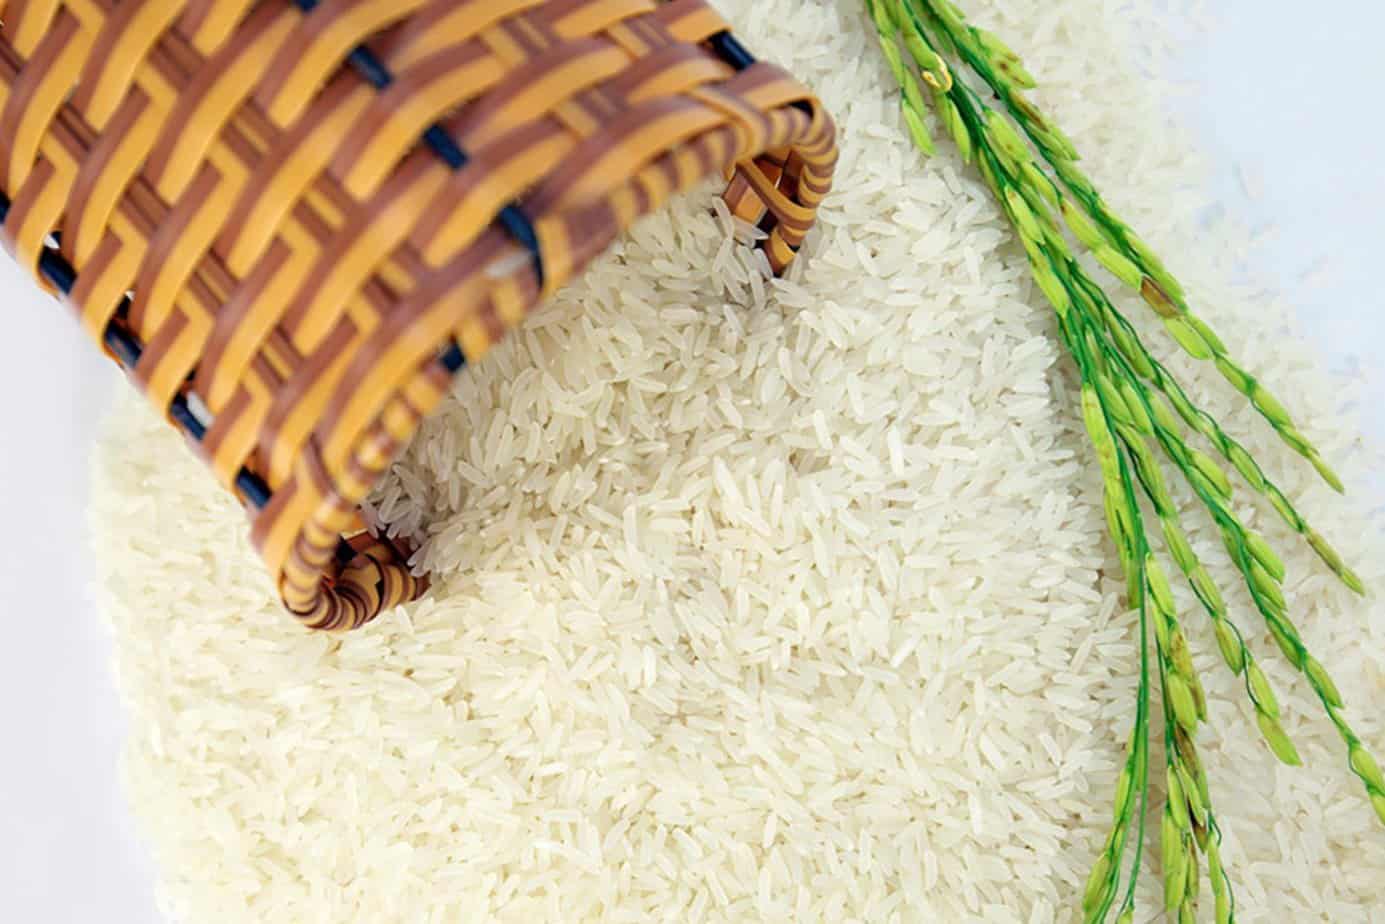 Nhận biết gạo chứa hóa chất bảo quản hóa học bằng cách nào?